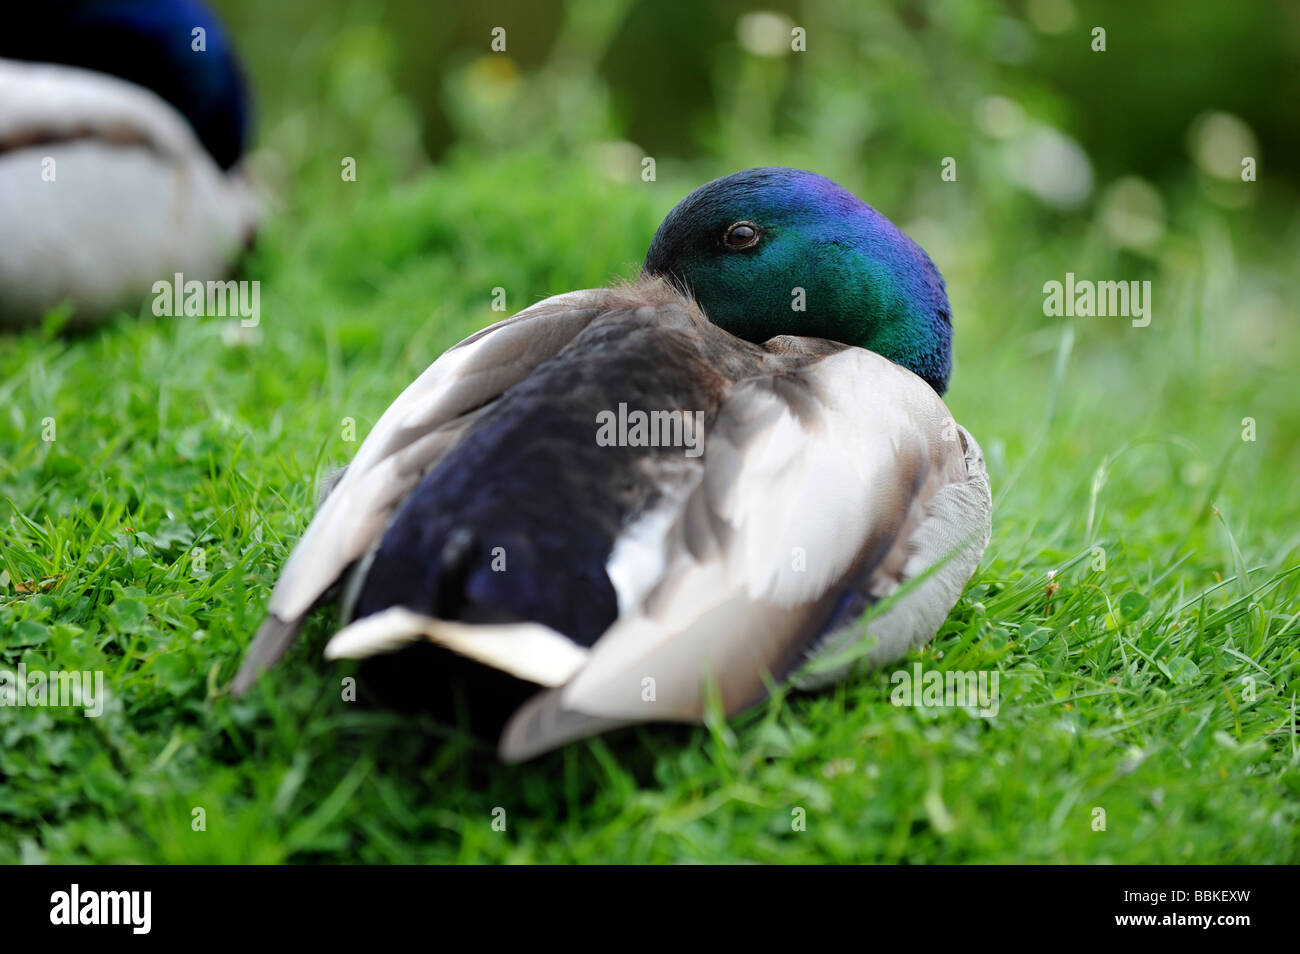 A duck sleeps with one eye open Stock Photo - Alamy